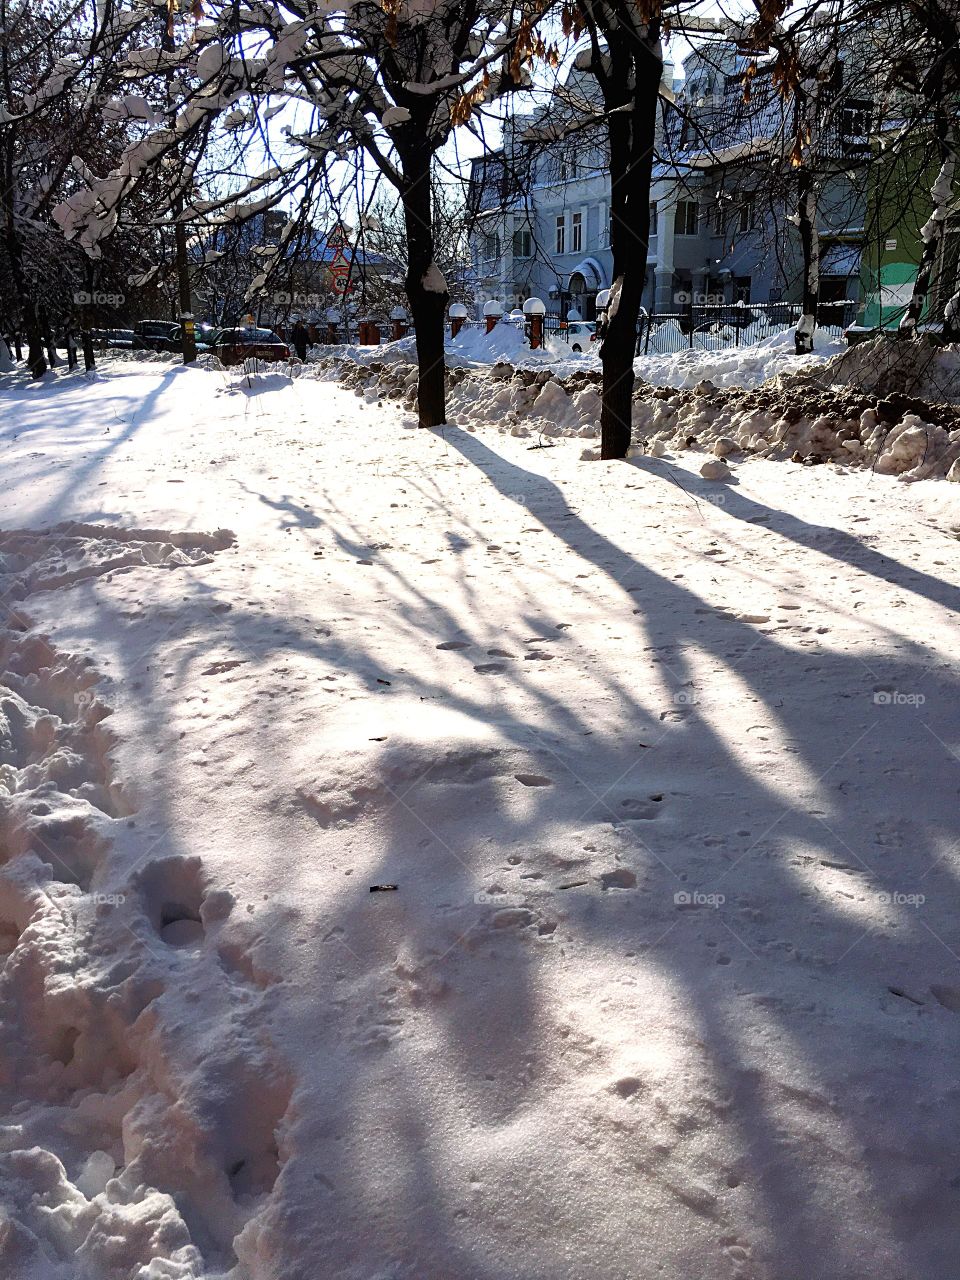 shadows on the snow